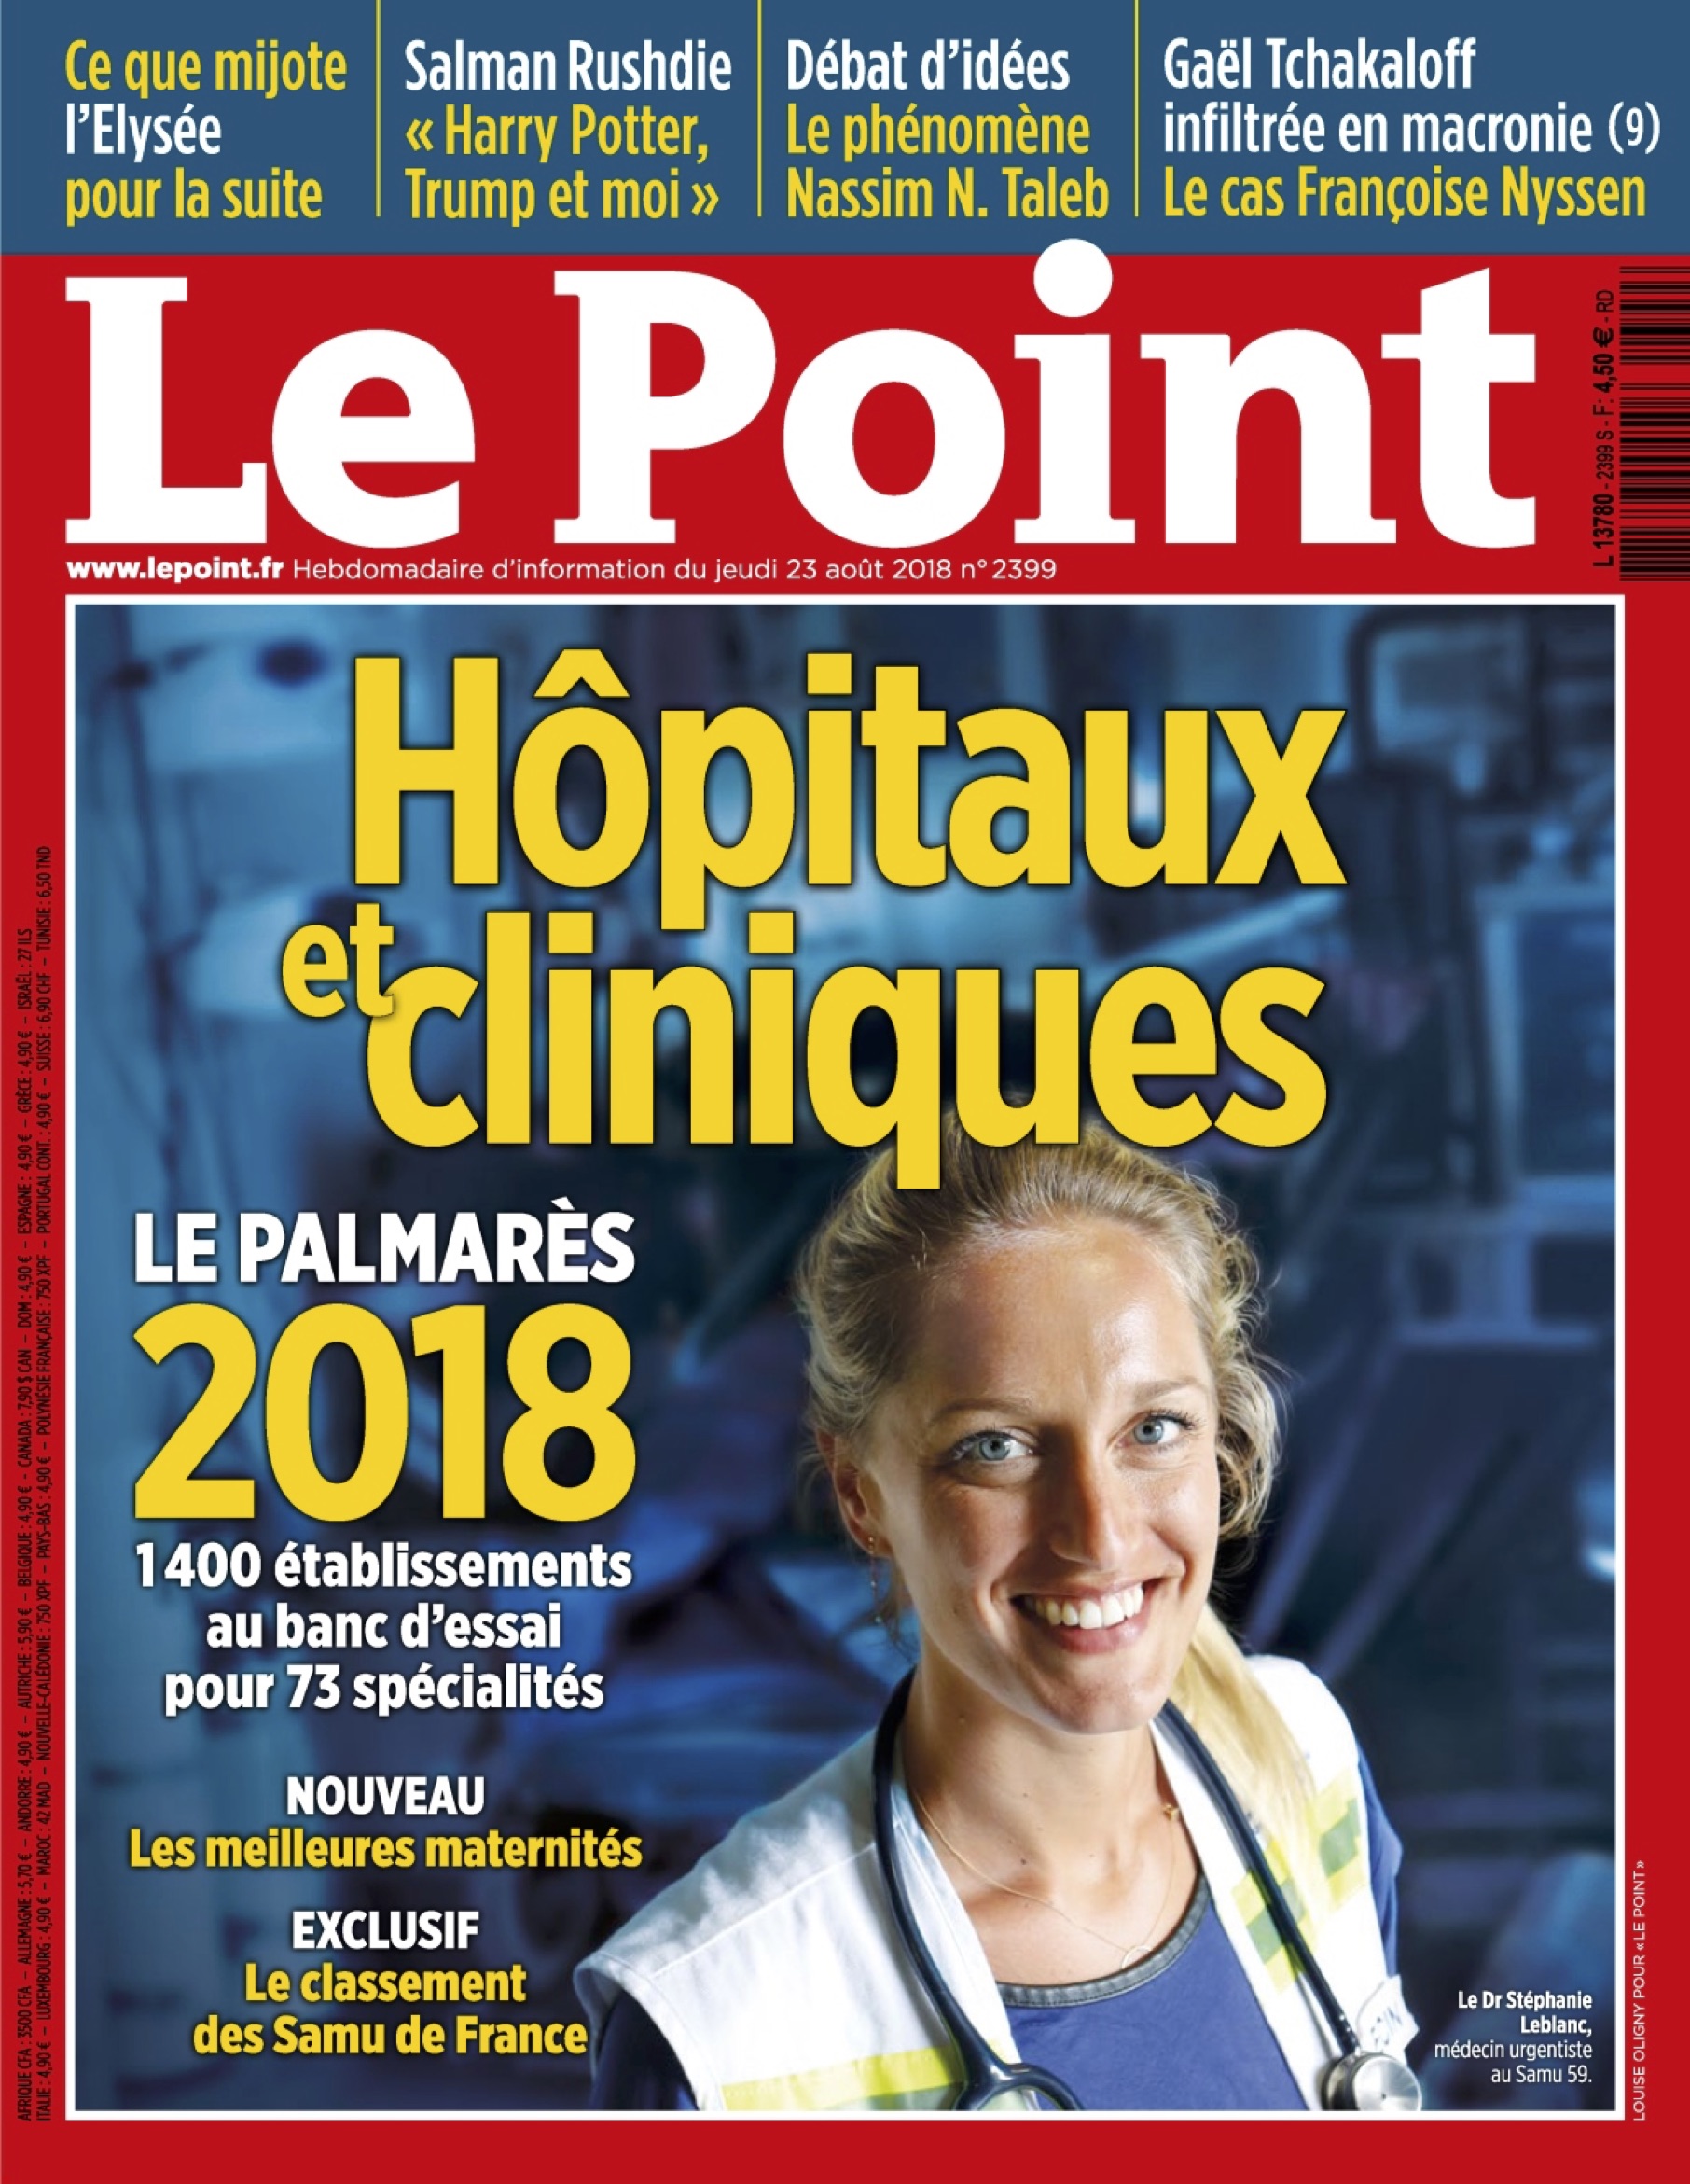 Le Point, Palmarès 2018, Classement, Chirurgie, Pied, Cheville, Hallux Valgus, Prothèse de cheville